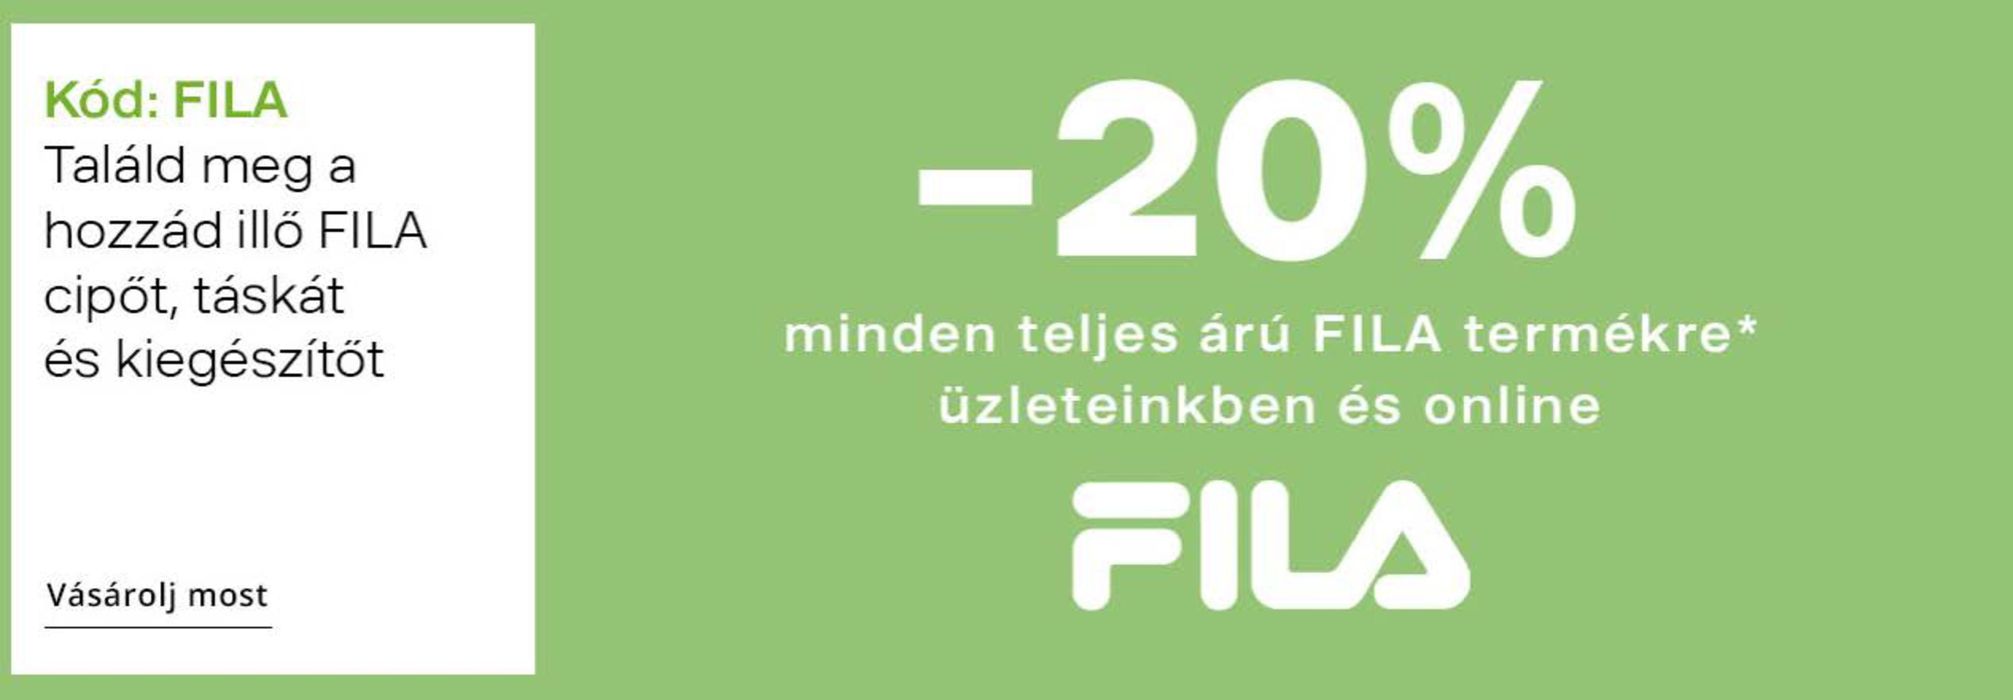 Deichmann katalógus, Dombóvár | -20% minden teljes árú FILA termékre* üzleteinkben és online | 2024. 04. 17. - 2024. 04. 21.